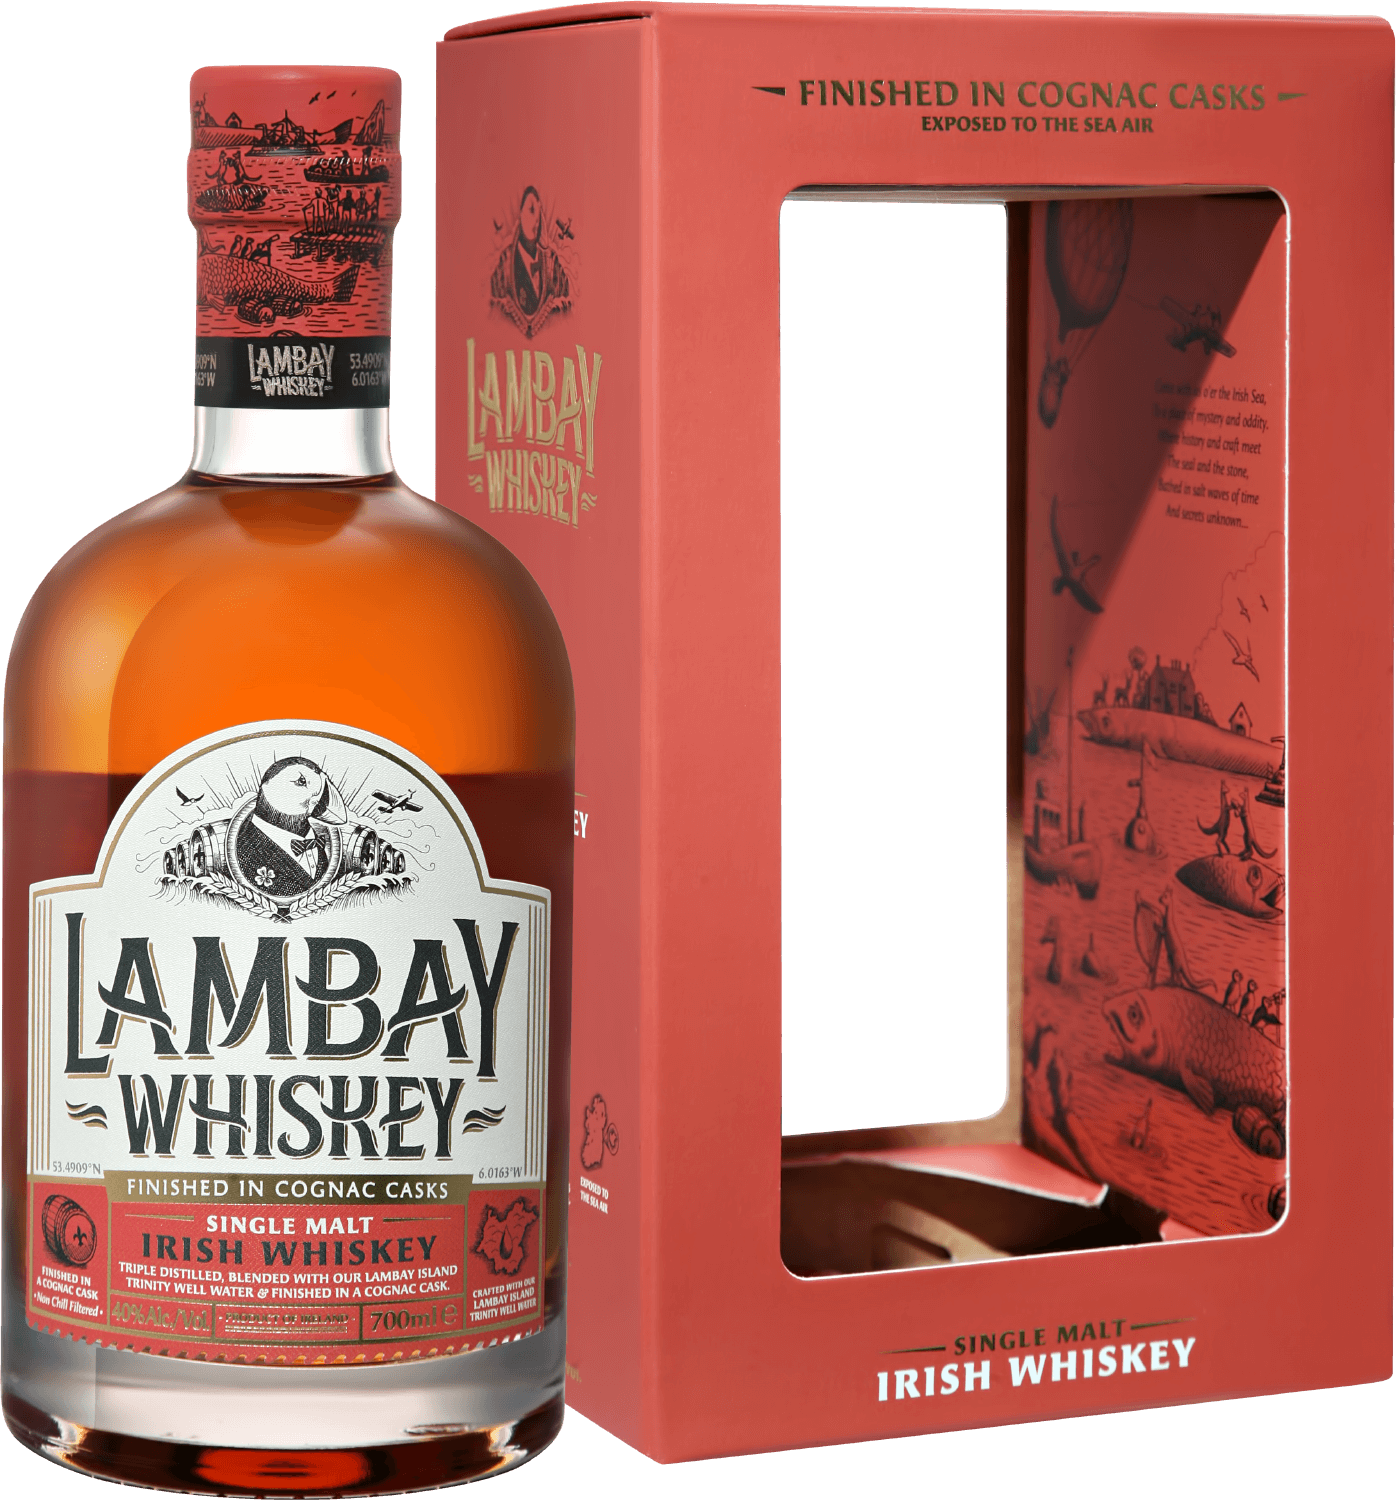 Lambay Single Malt Irish Whiskey 5 y.o. (gift box) pogues single malt irish whiskey gift box